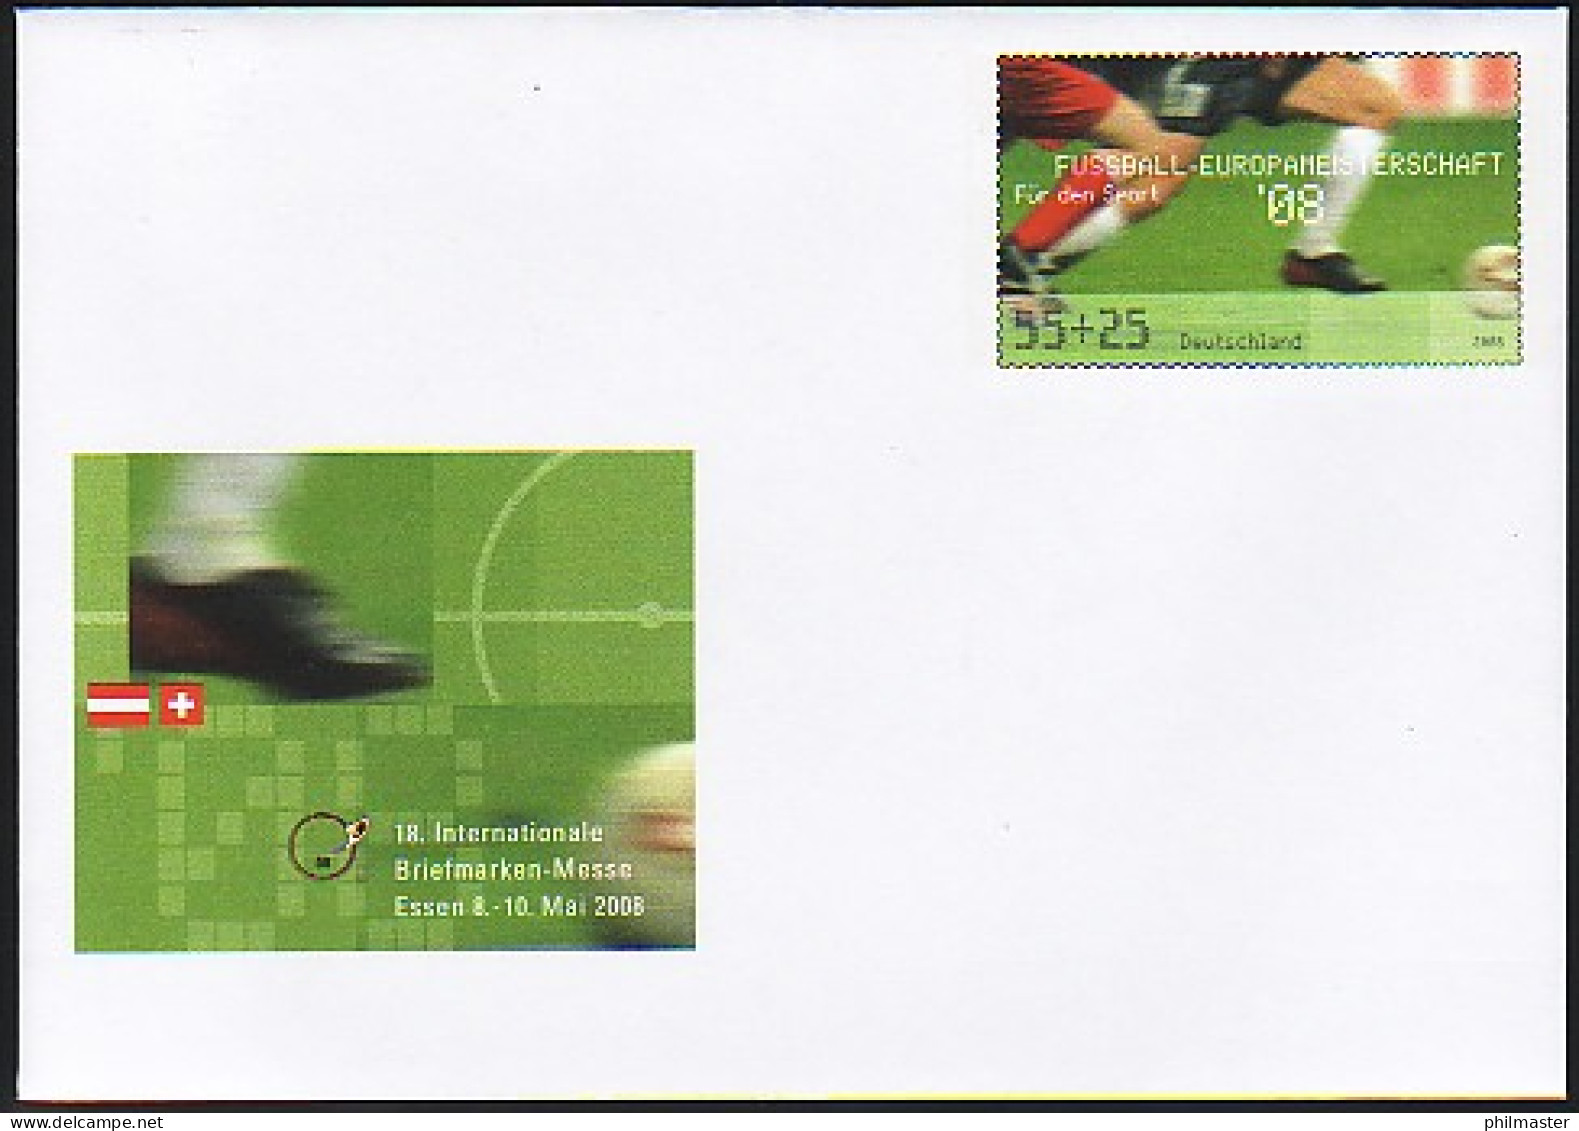 USo 155 Briefmarken-Messe Essen - Fußball-EM 2008, ** - Covers - Mint